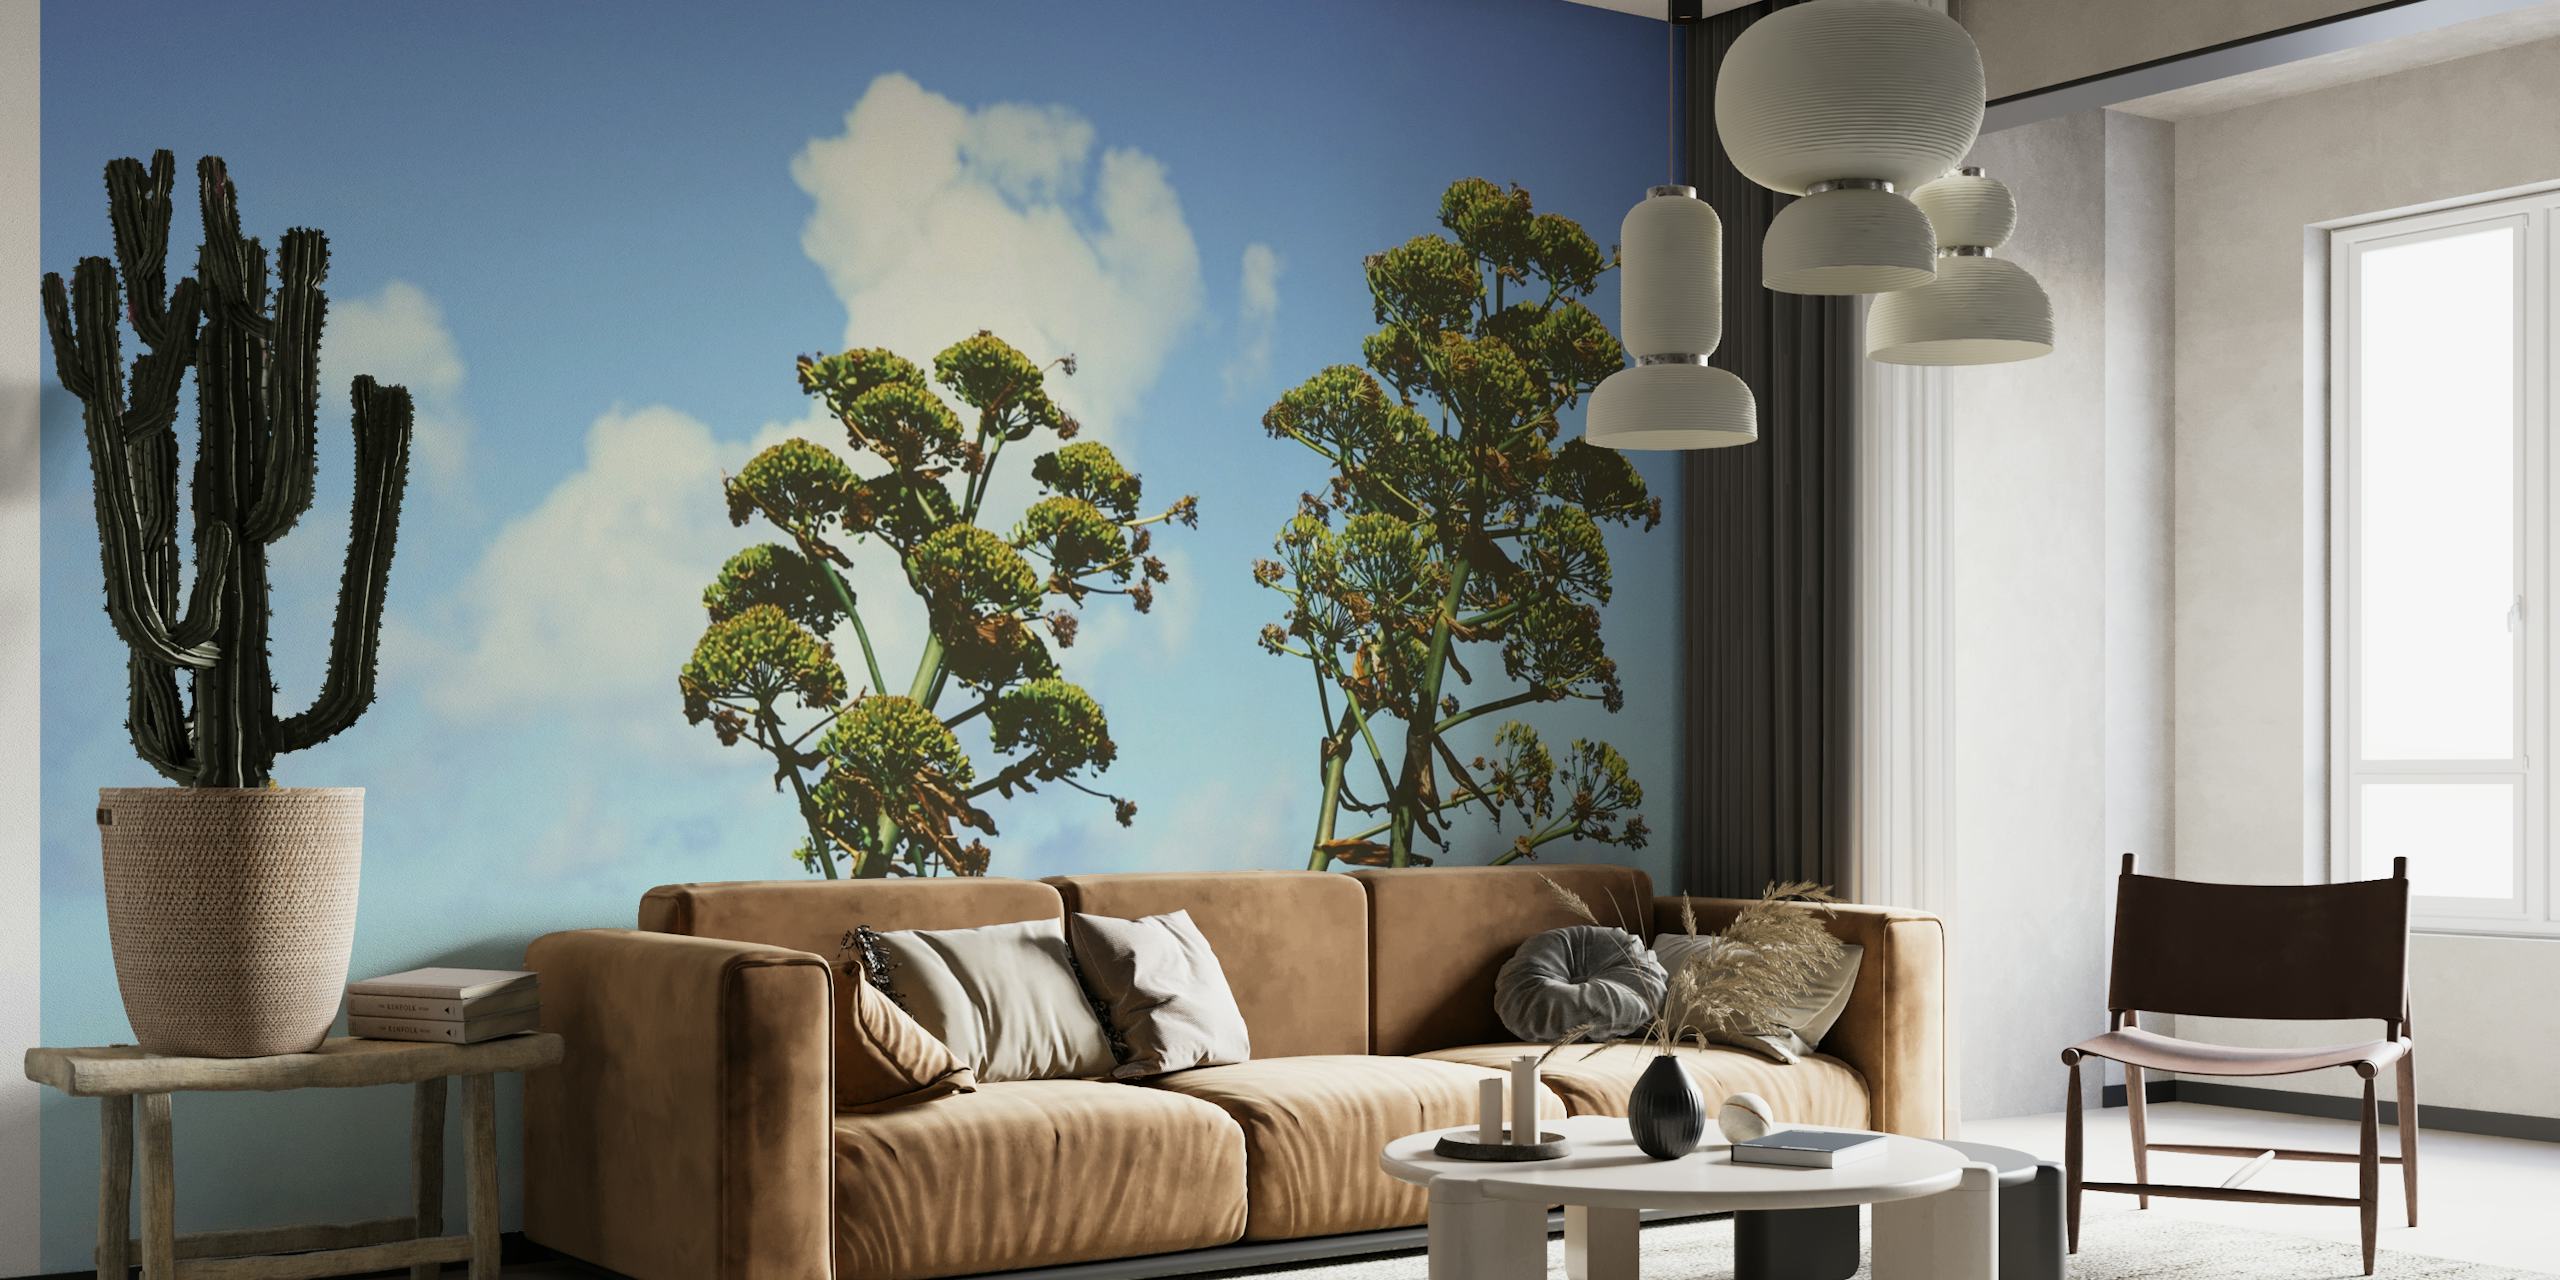 Mural de parede Zen Botanical com árvores altas e folhagem exuberante contra um céu azul